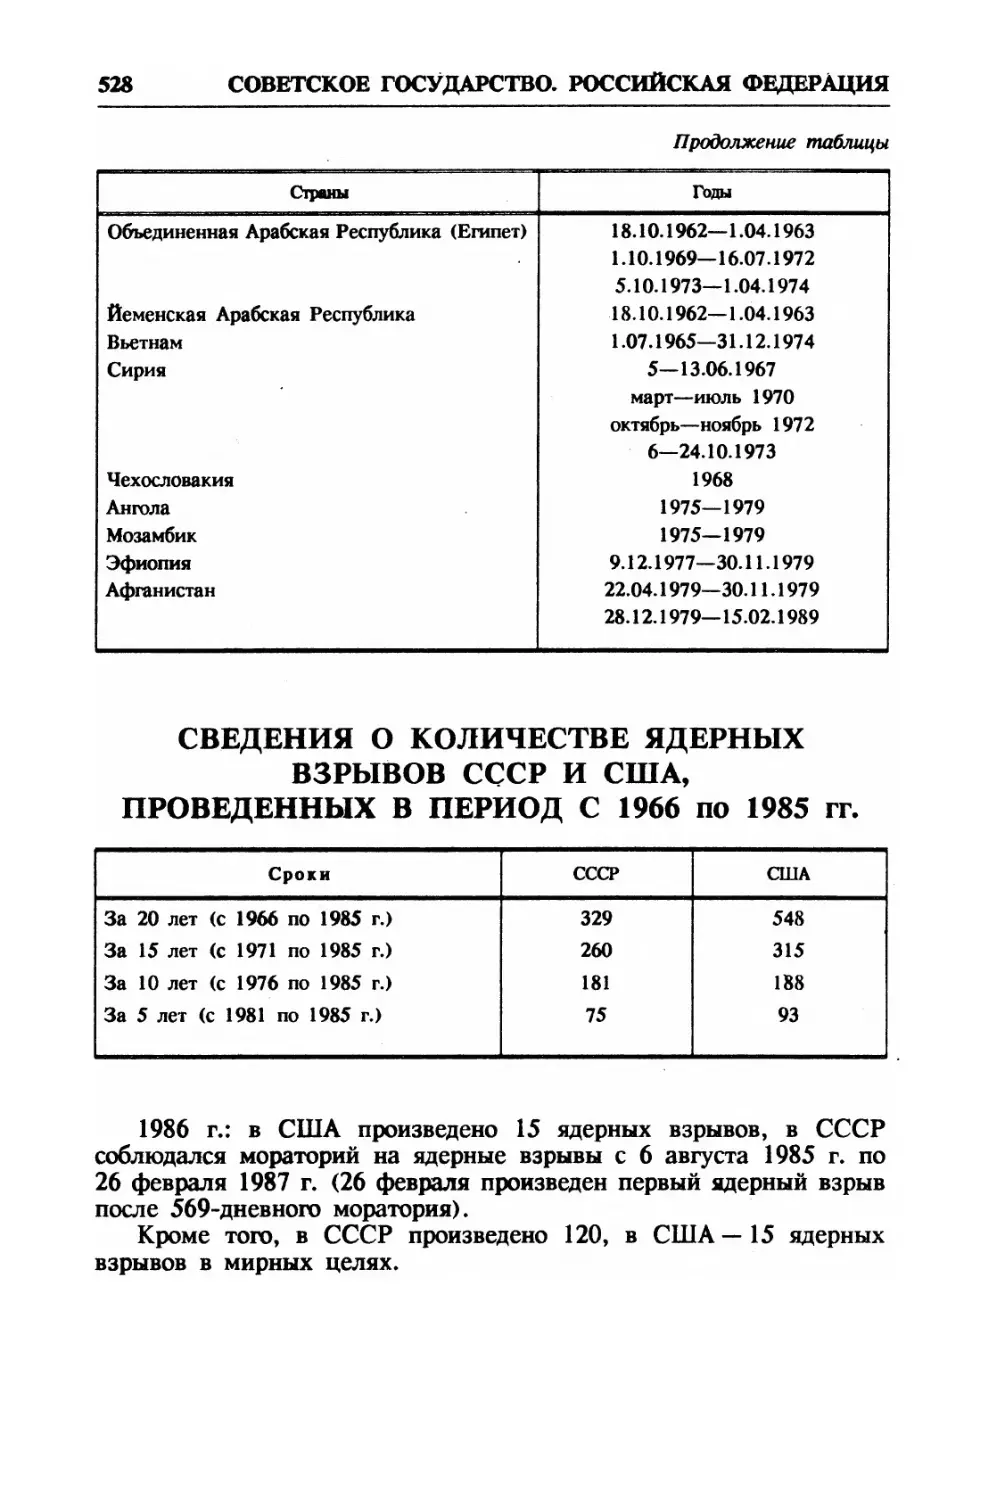 Сведения о количестве ядерных взрывов СССР и США, проведенных в период с 1966 по 1985 гг